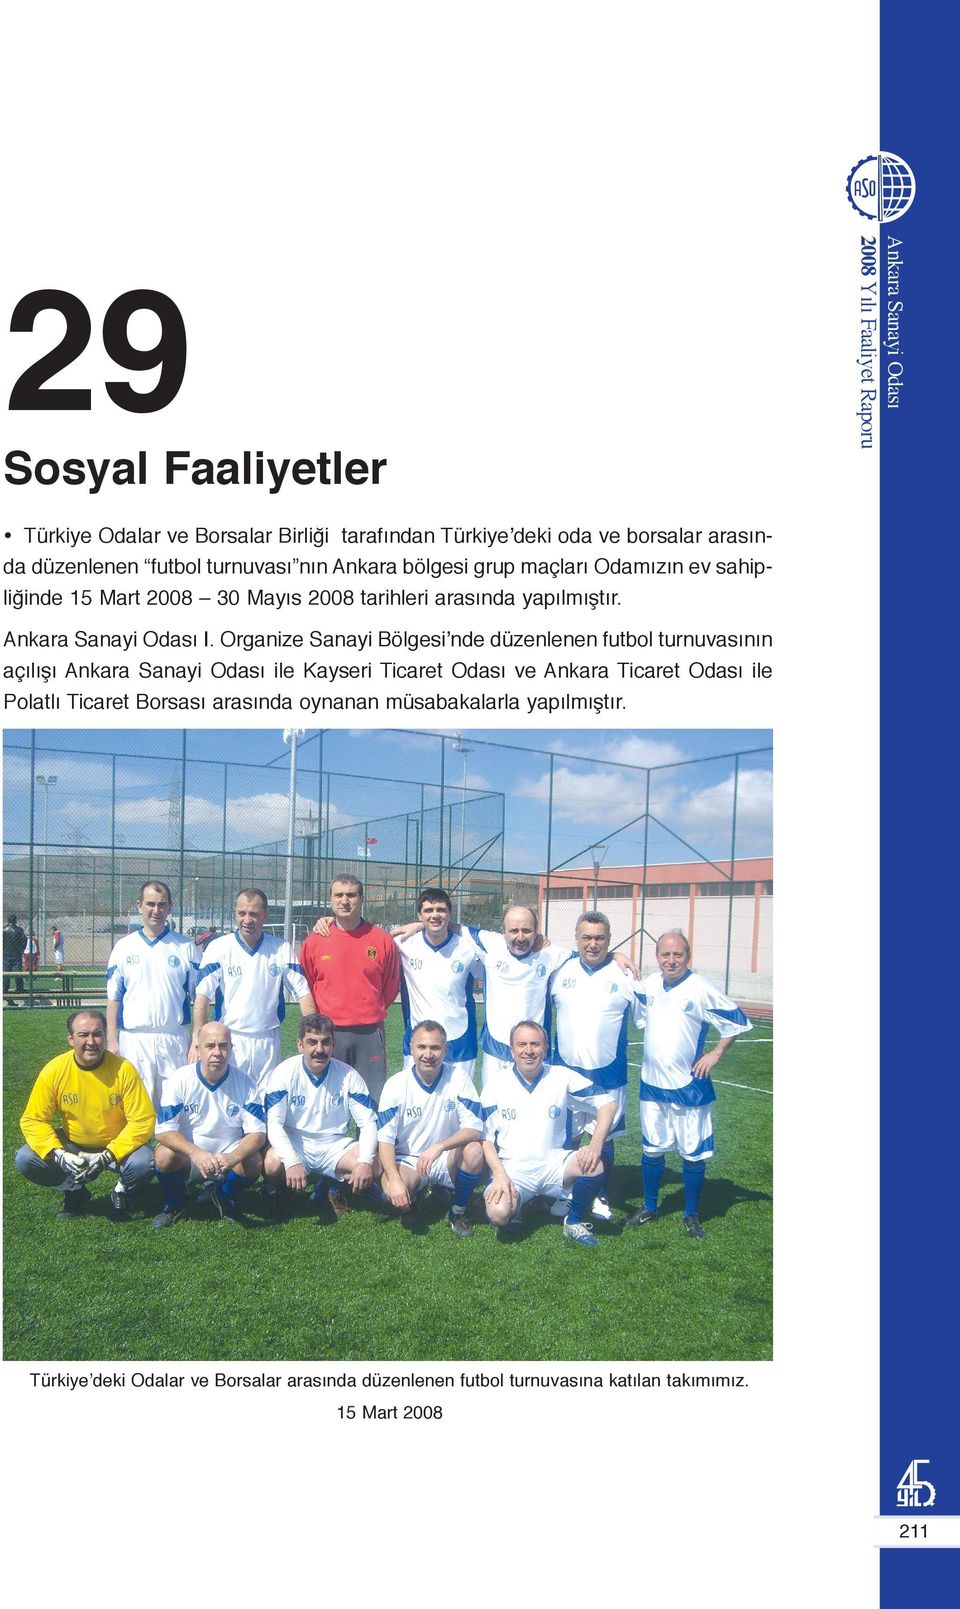 Organize Sanayi Bölgesi nde düzenlenen futbol turnuvasının açılışı ile Kayseri Ticaret Odası ve Ankara Ticaret Odası ile Polatlı Ticaret